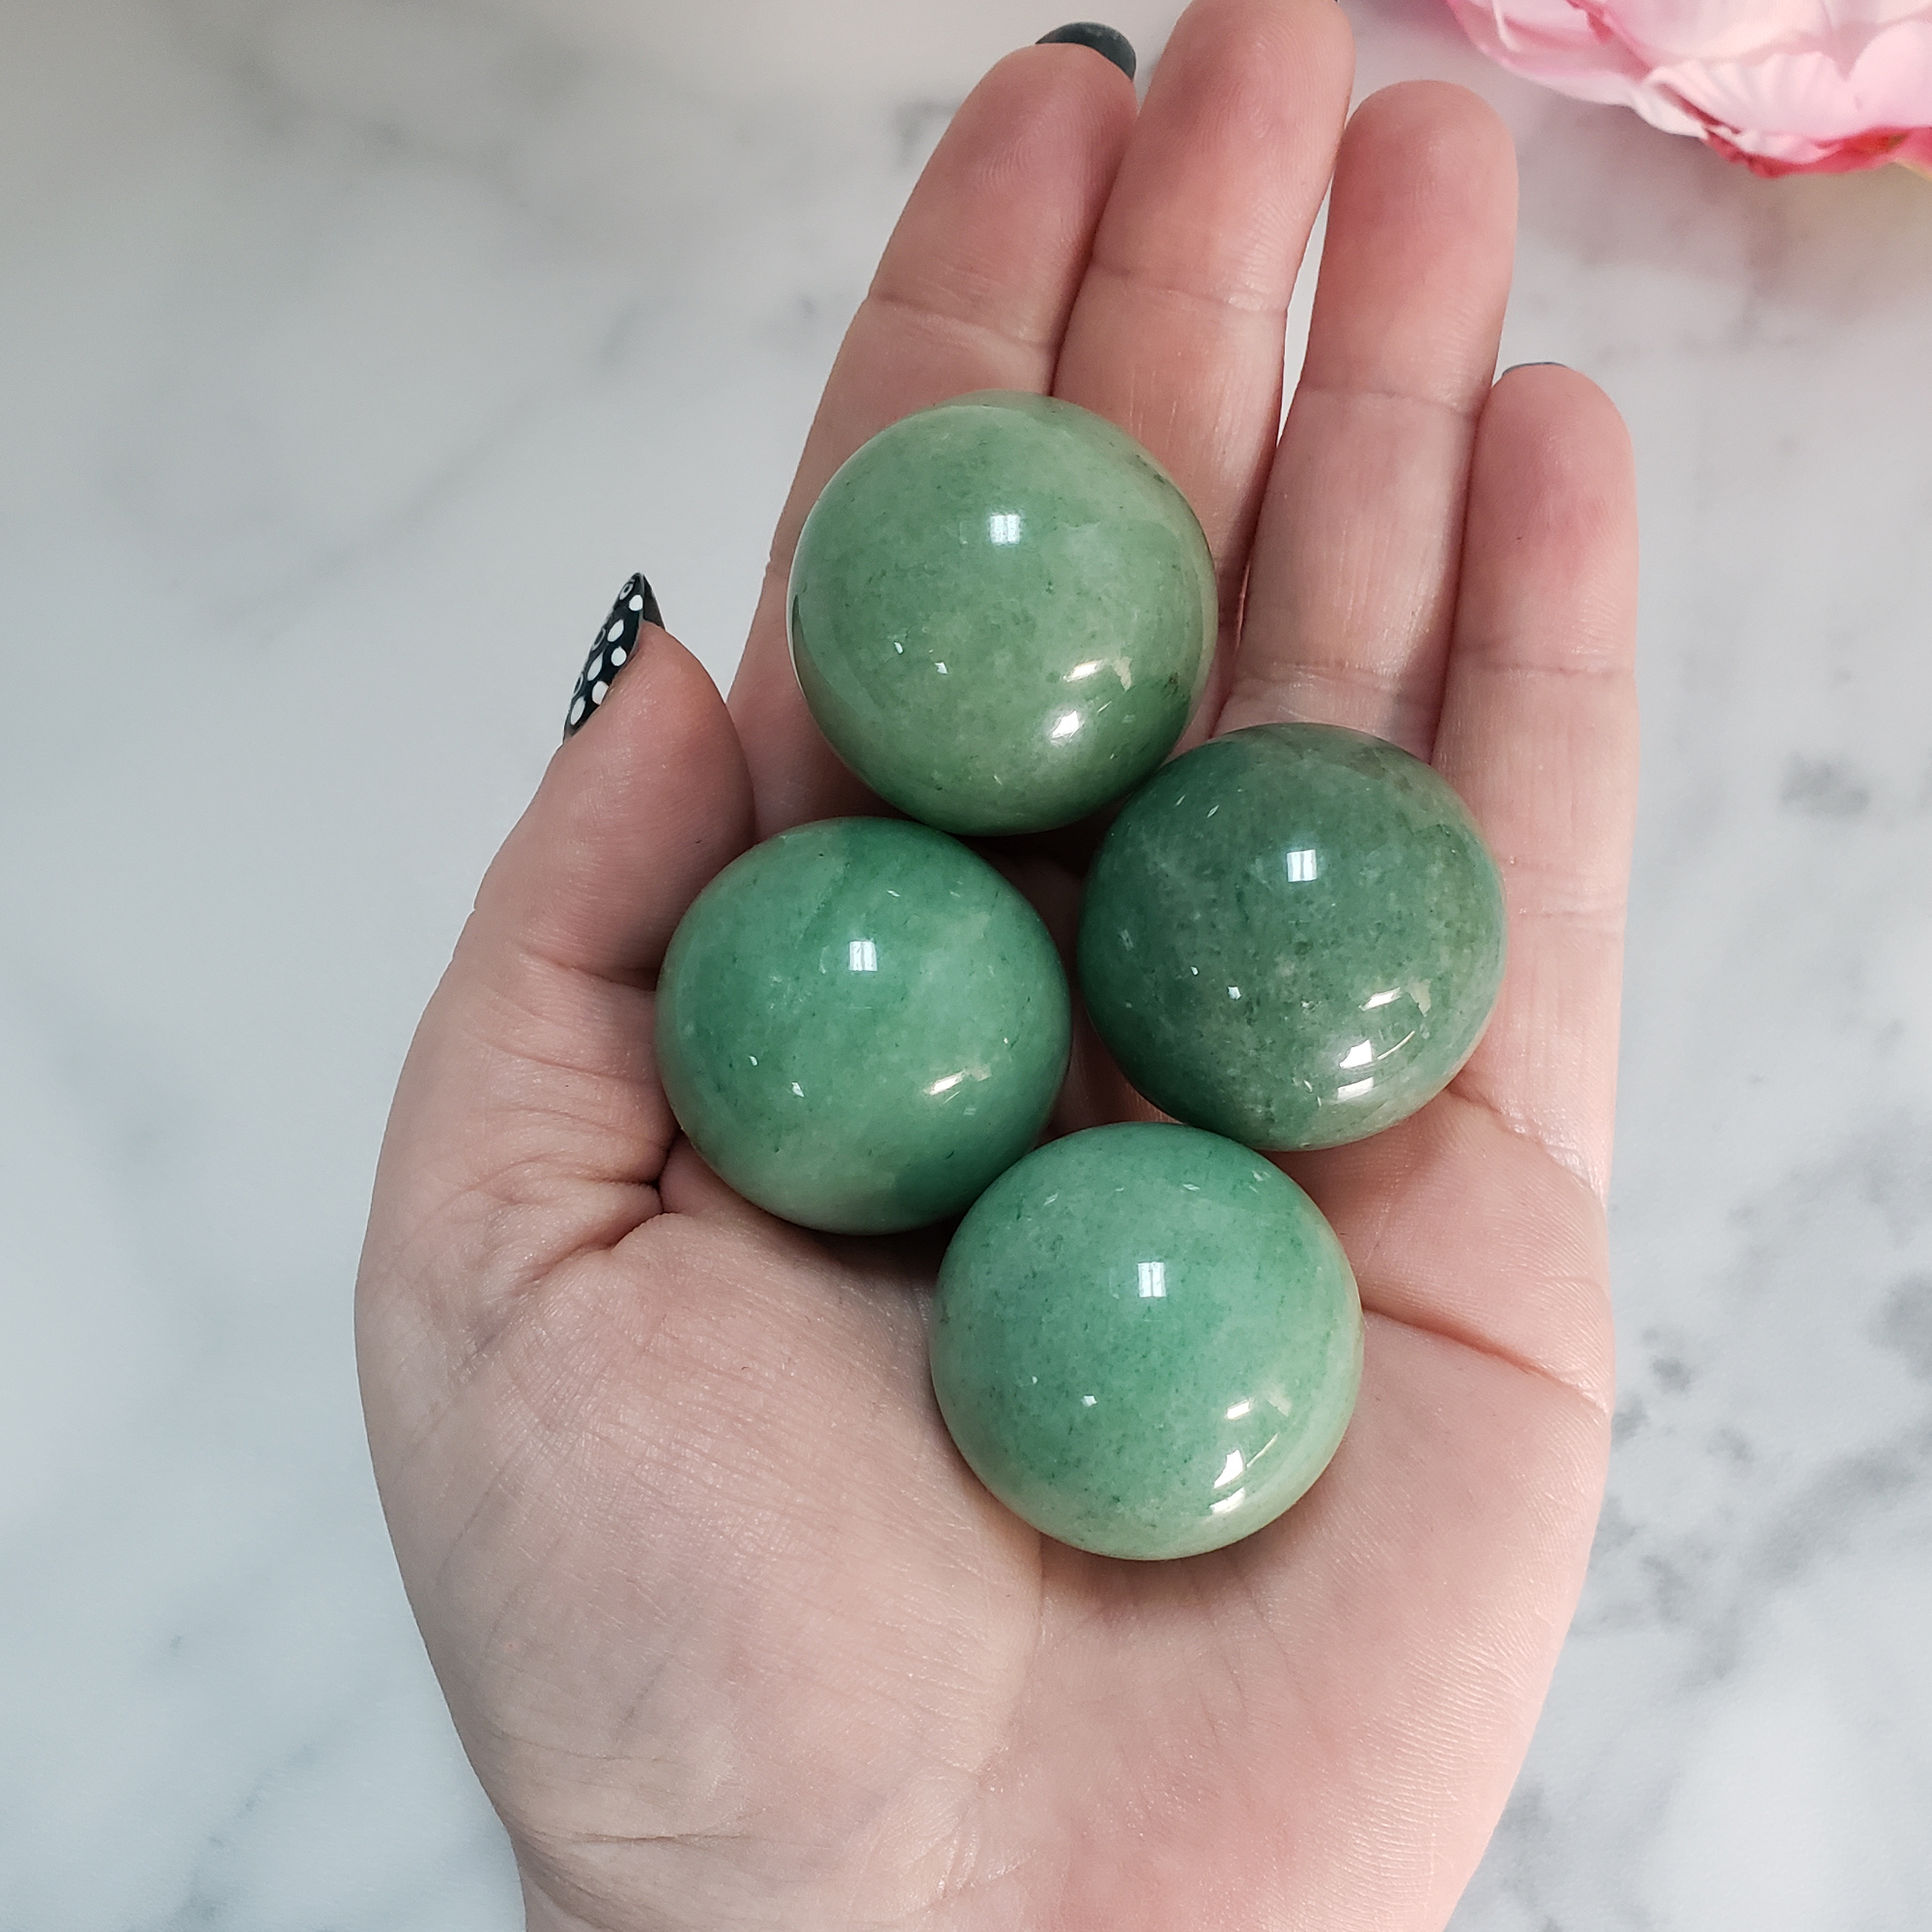 Green Aventurine Natural Crystal Sphere Gemstone Orb - One 30mm Sphere - Four Orbs in Hand